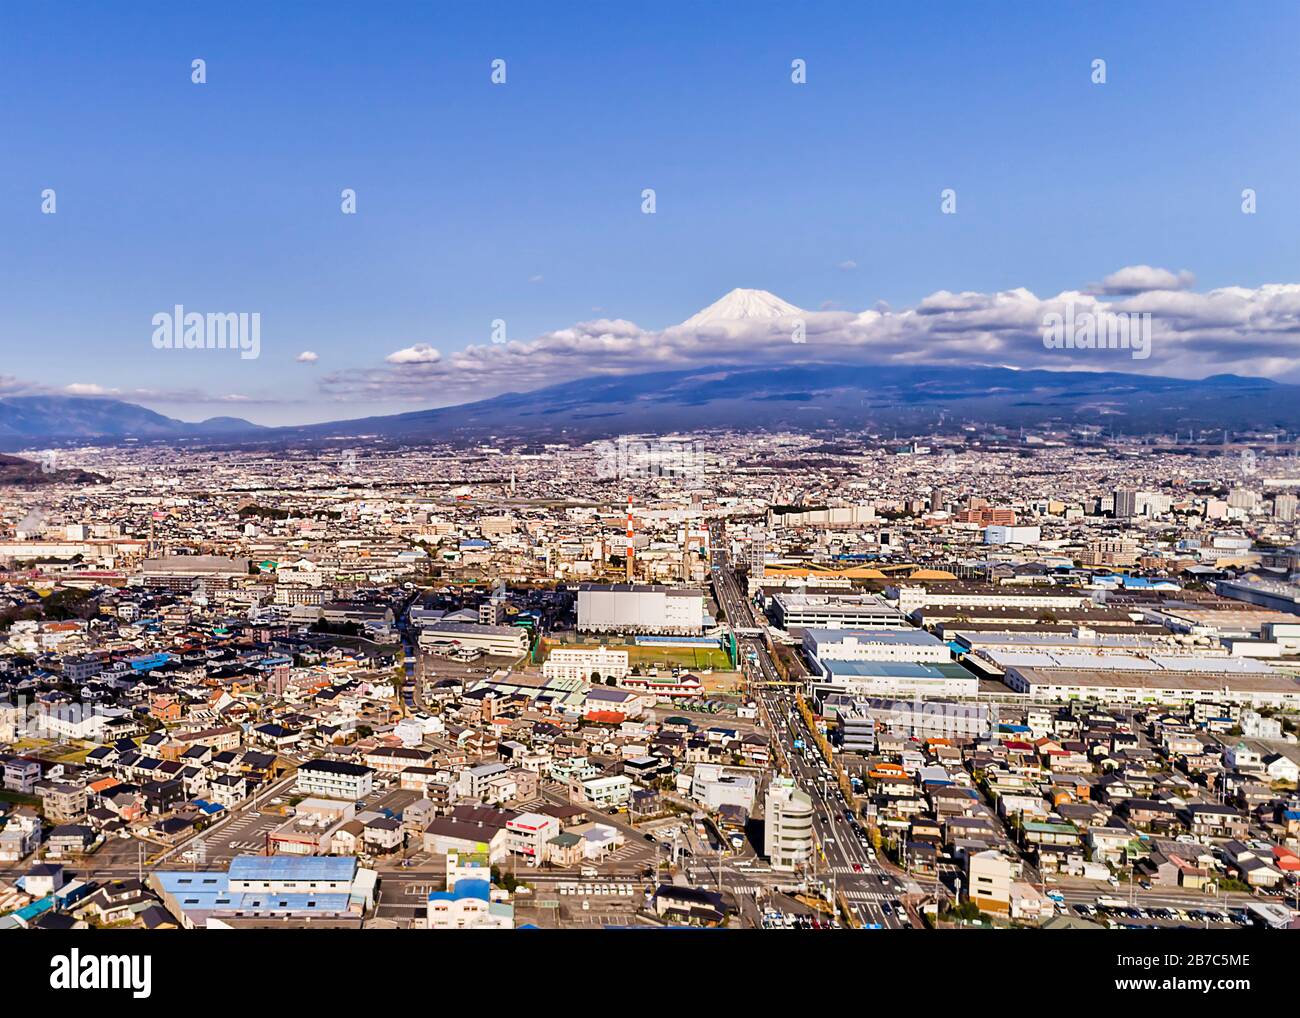 Shin Fuji en Japón alrededor del famoso Monte Fujiyama. Vista aérea elevada sobre las calles de la ciudad. Foto de stock